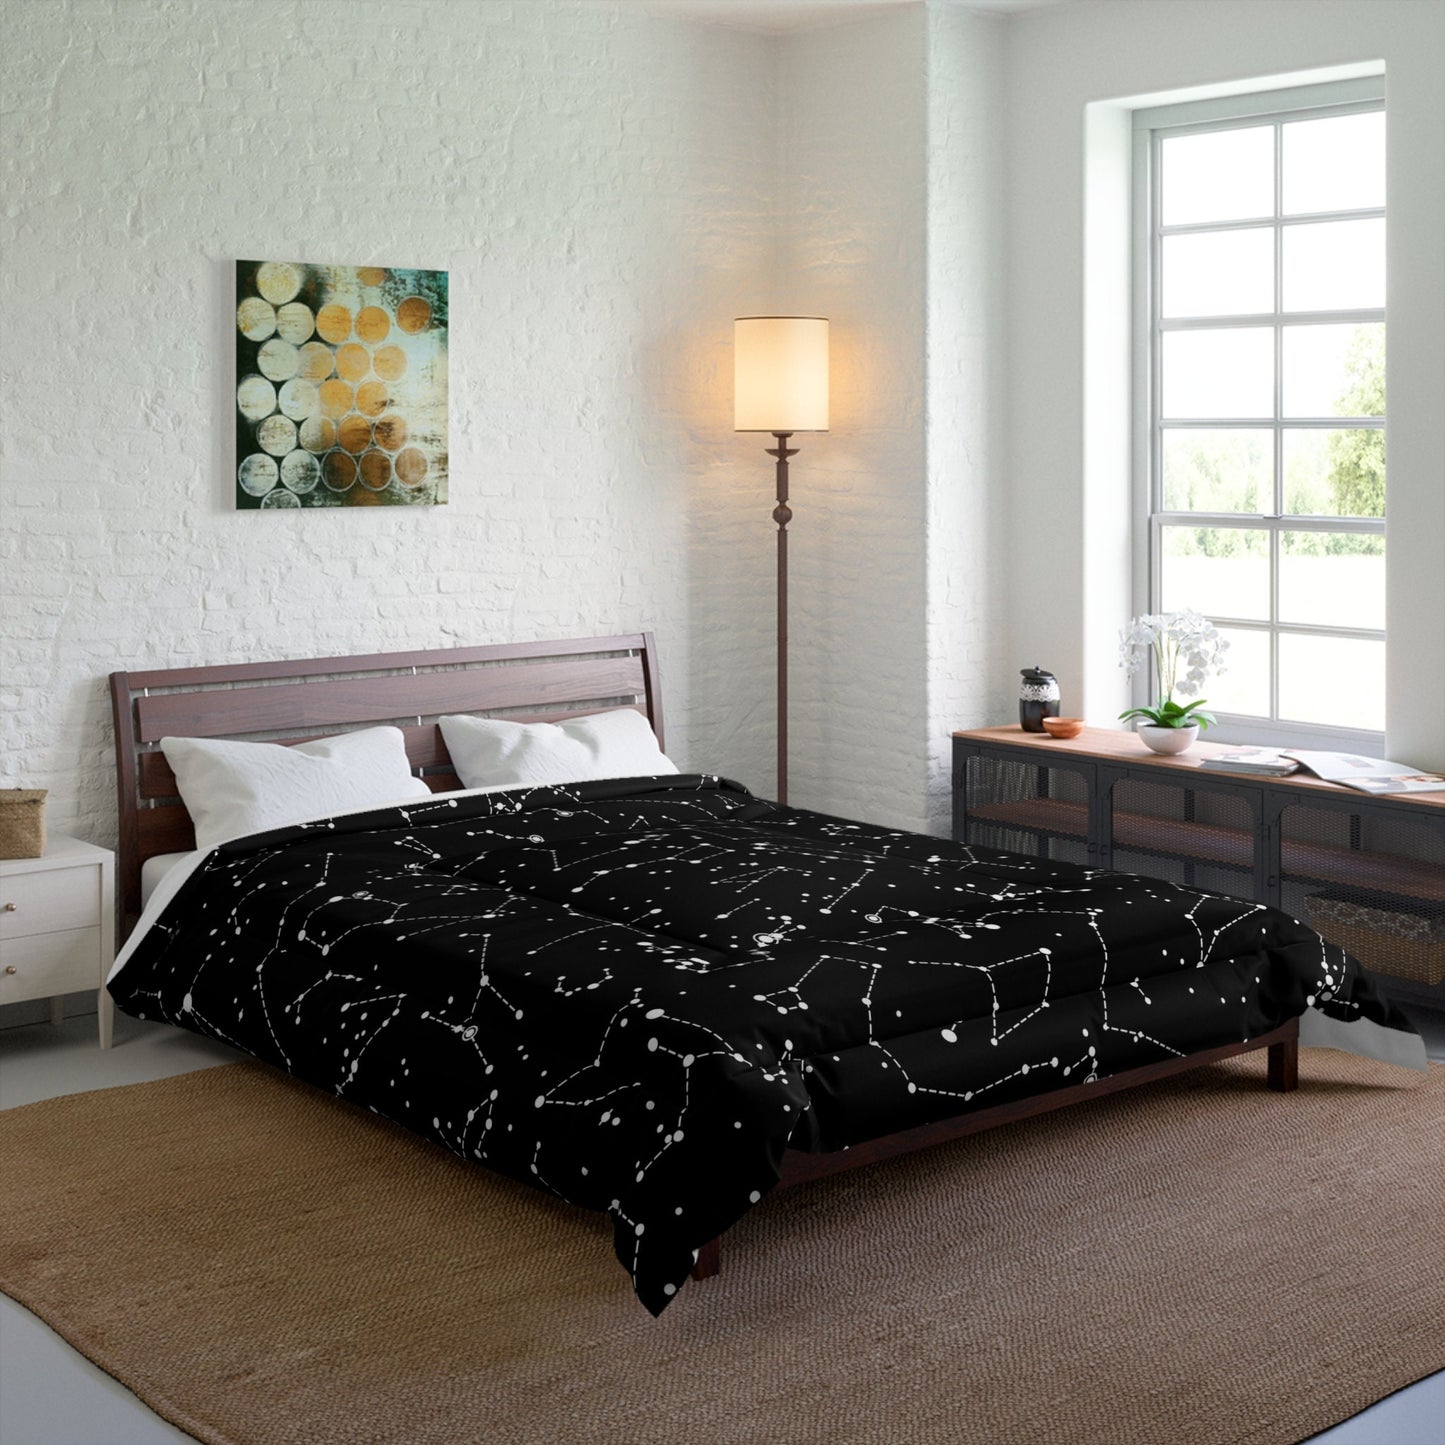 Star Constellations Duvet Cover or Comforter space bedding black duvet Queen twin bedroom stars duvet star constellations bedding